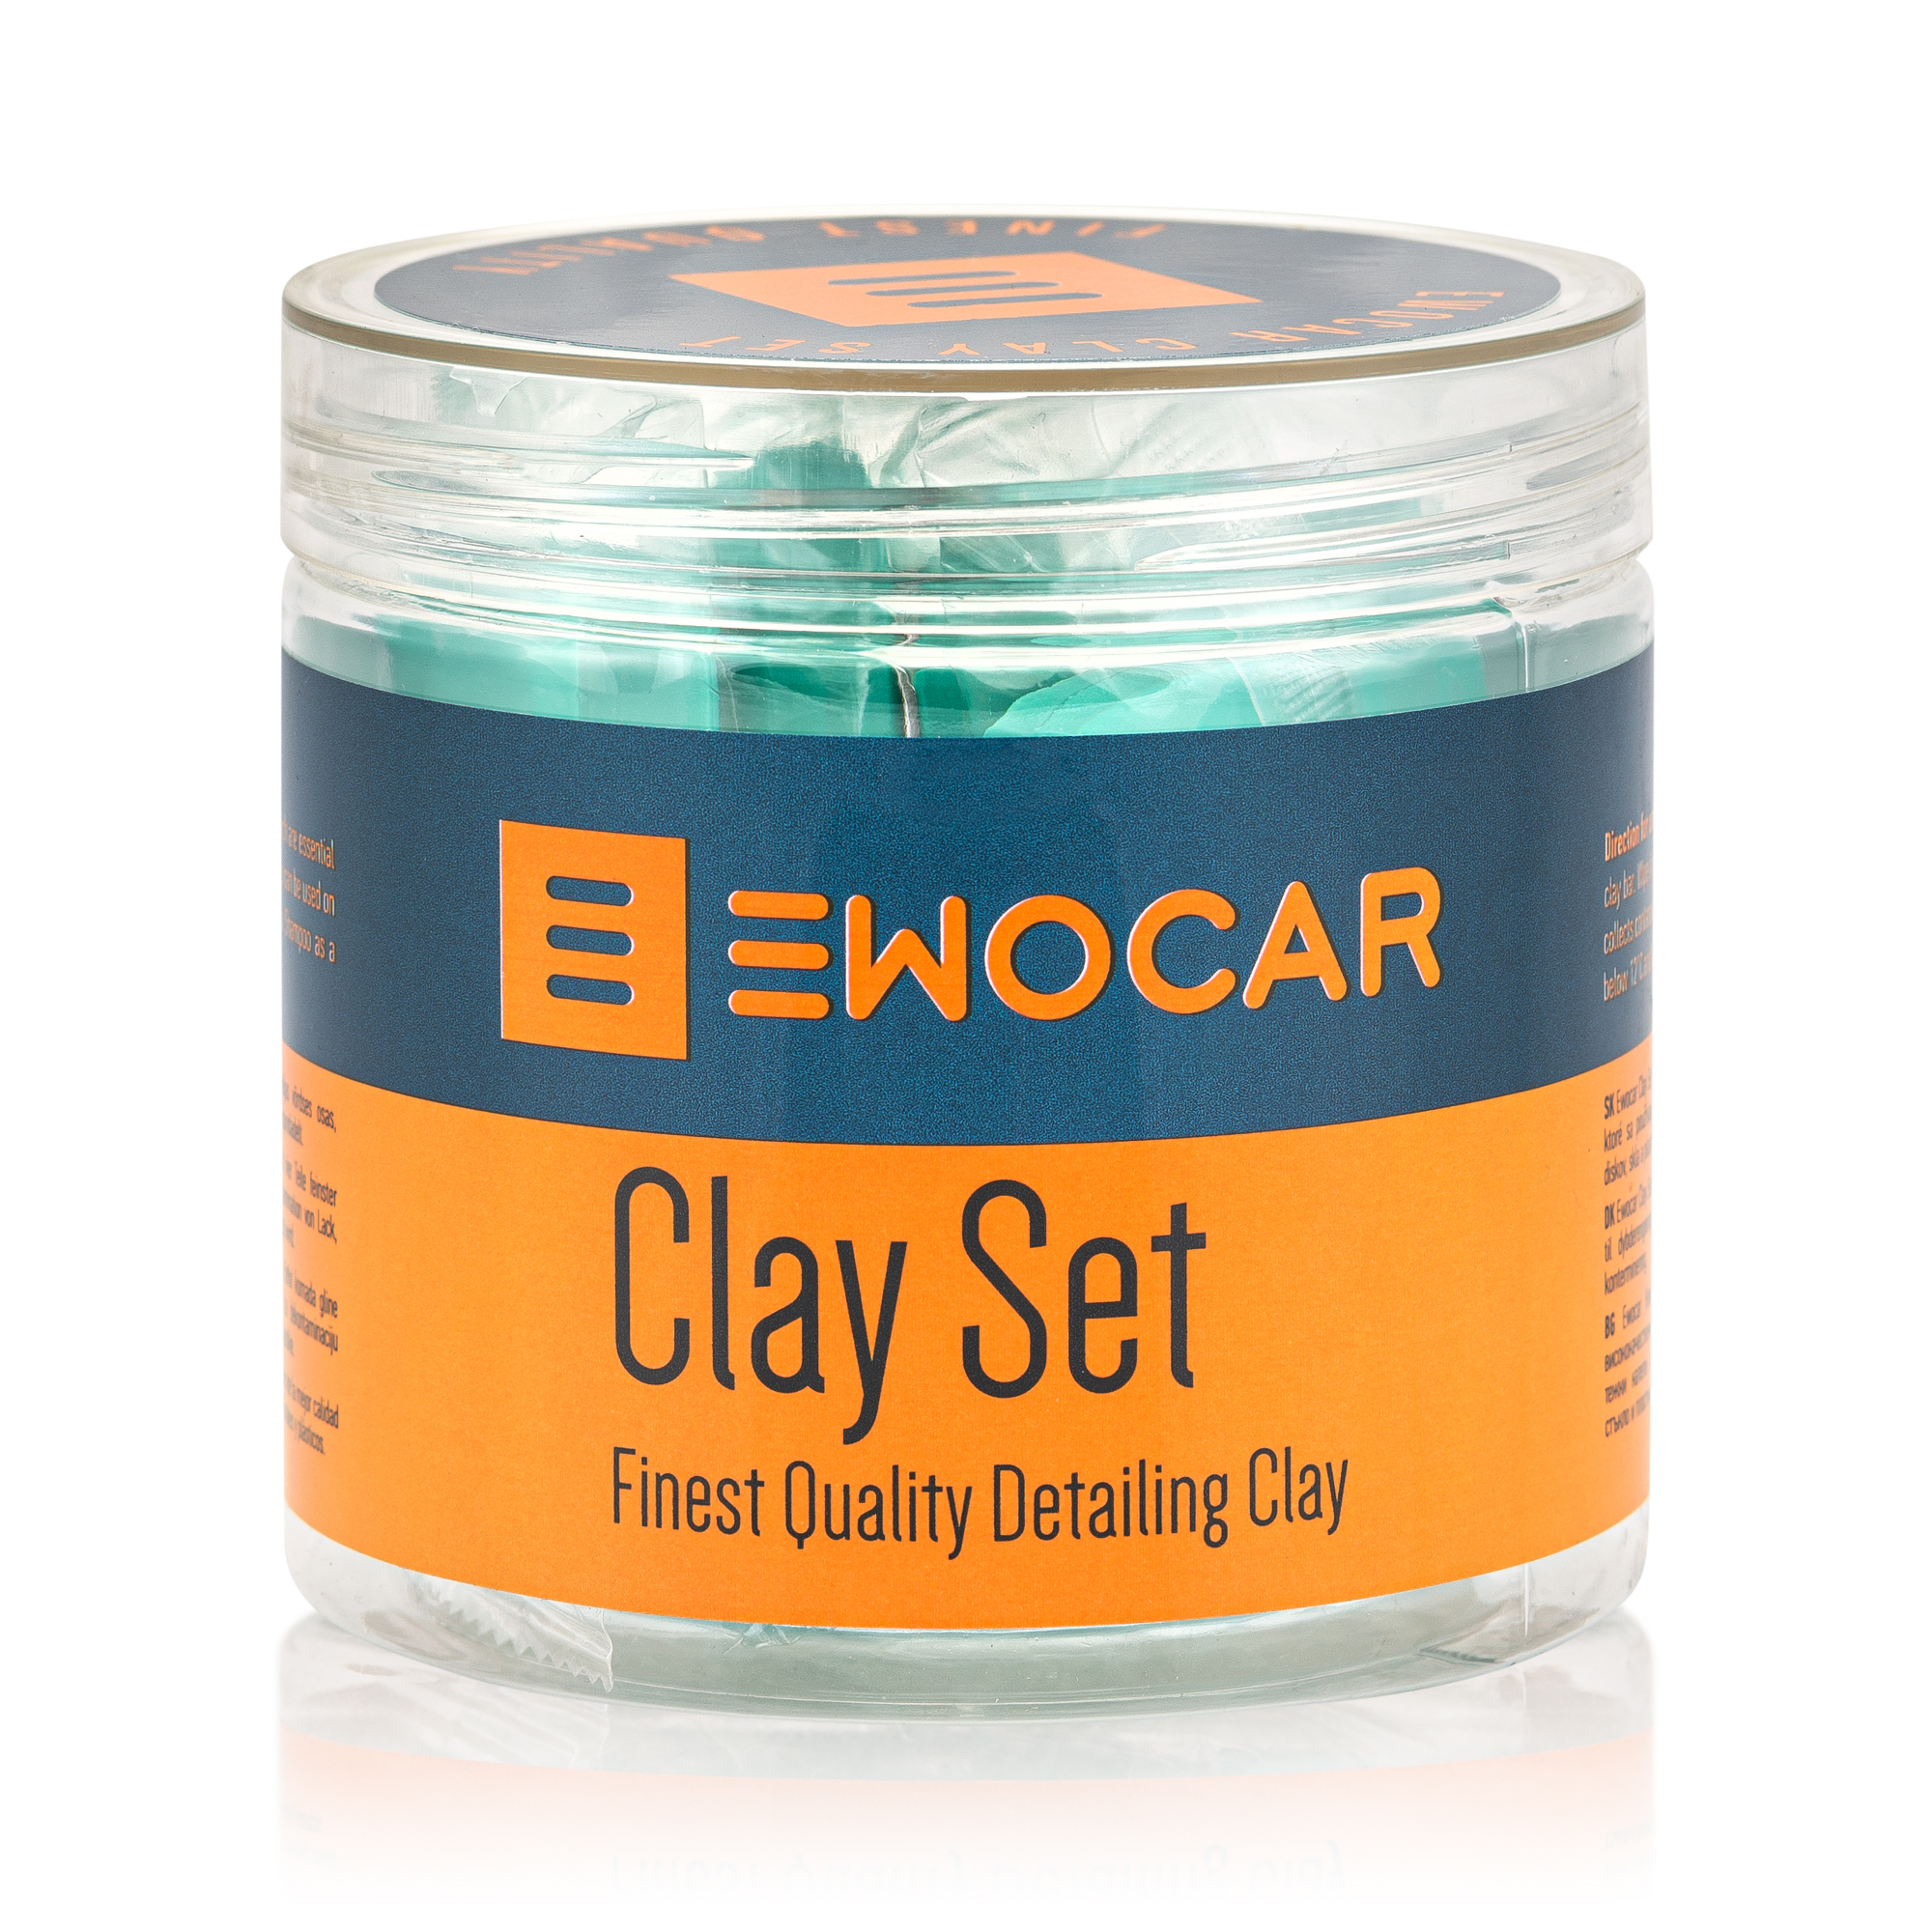 Ewocar Clay Set 4x50g set glina uključuje četiri komada gline vrhunske kvalitete koje se koriste za dekontaminaciju lakiranih površina, naplataka, stakla i plastike.